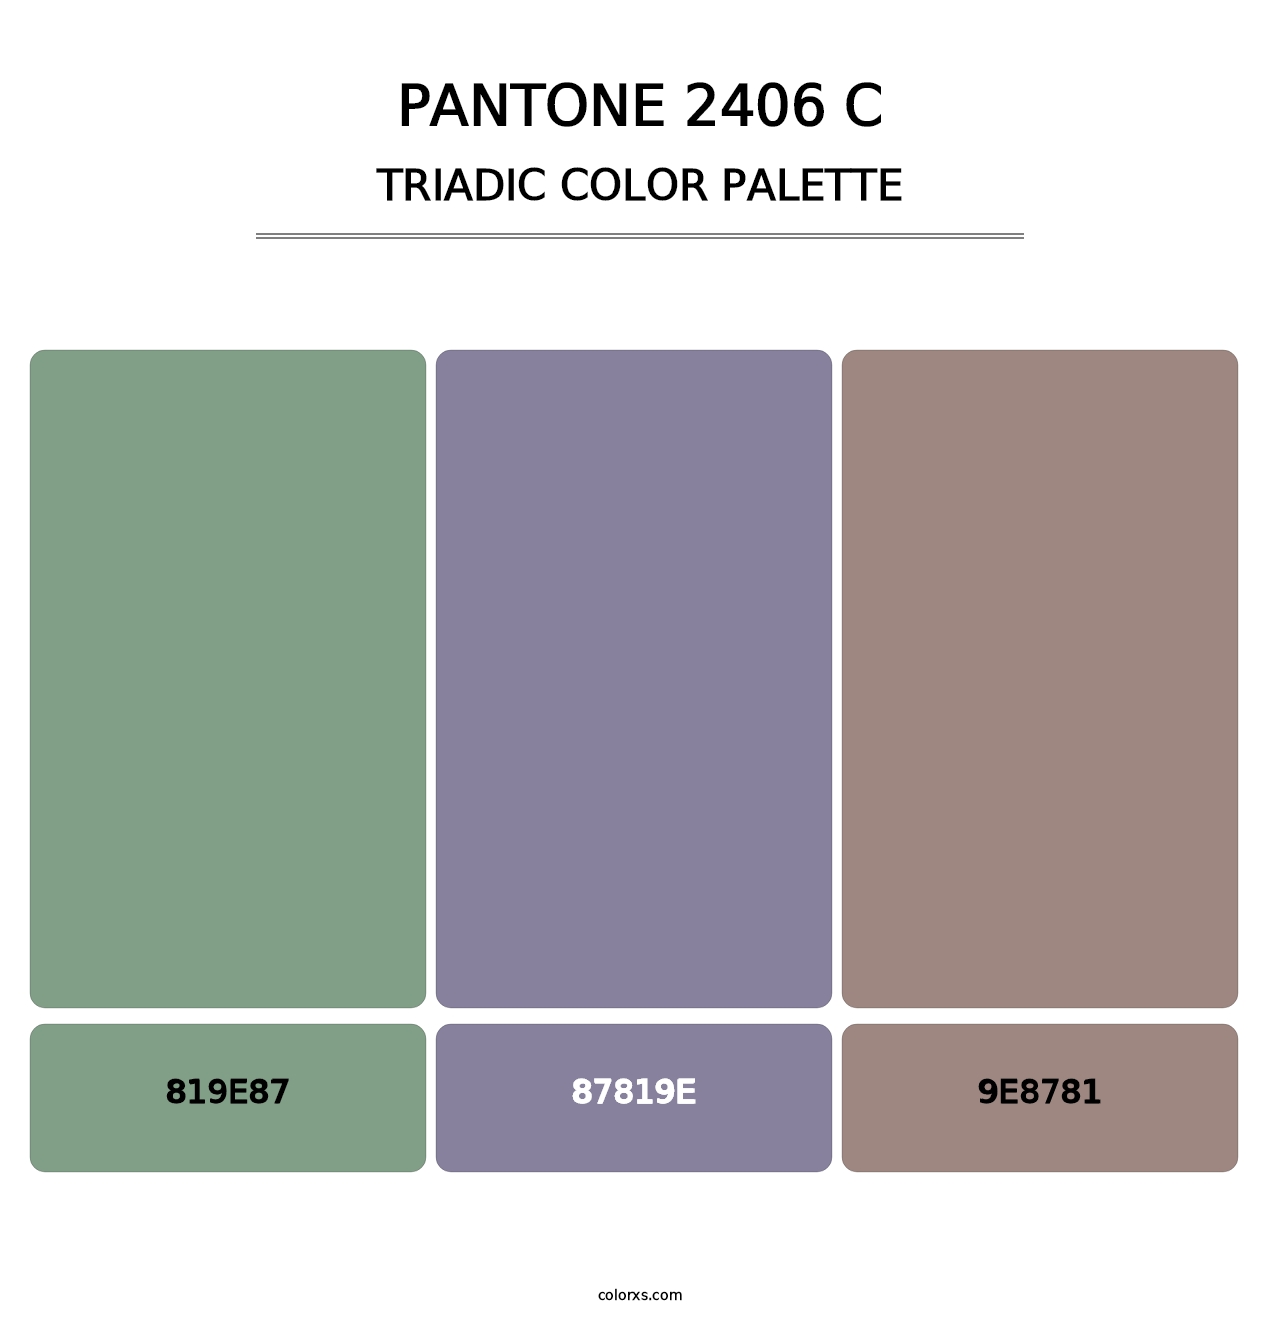 PANTONE 2406 C - Triadic Color Palette